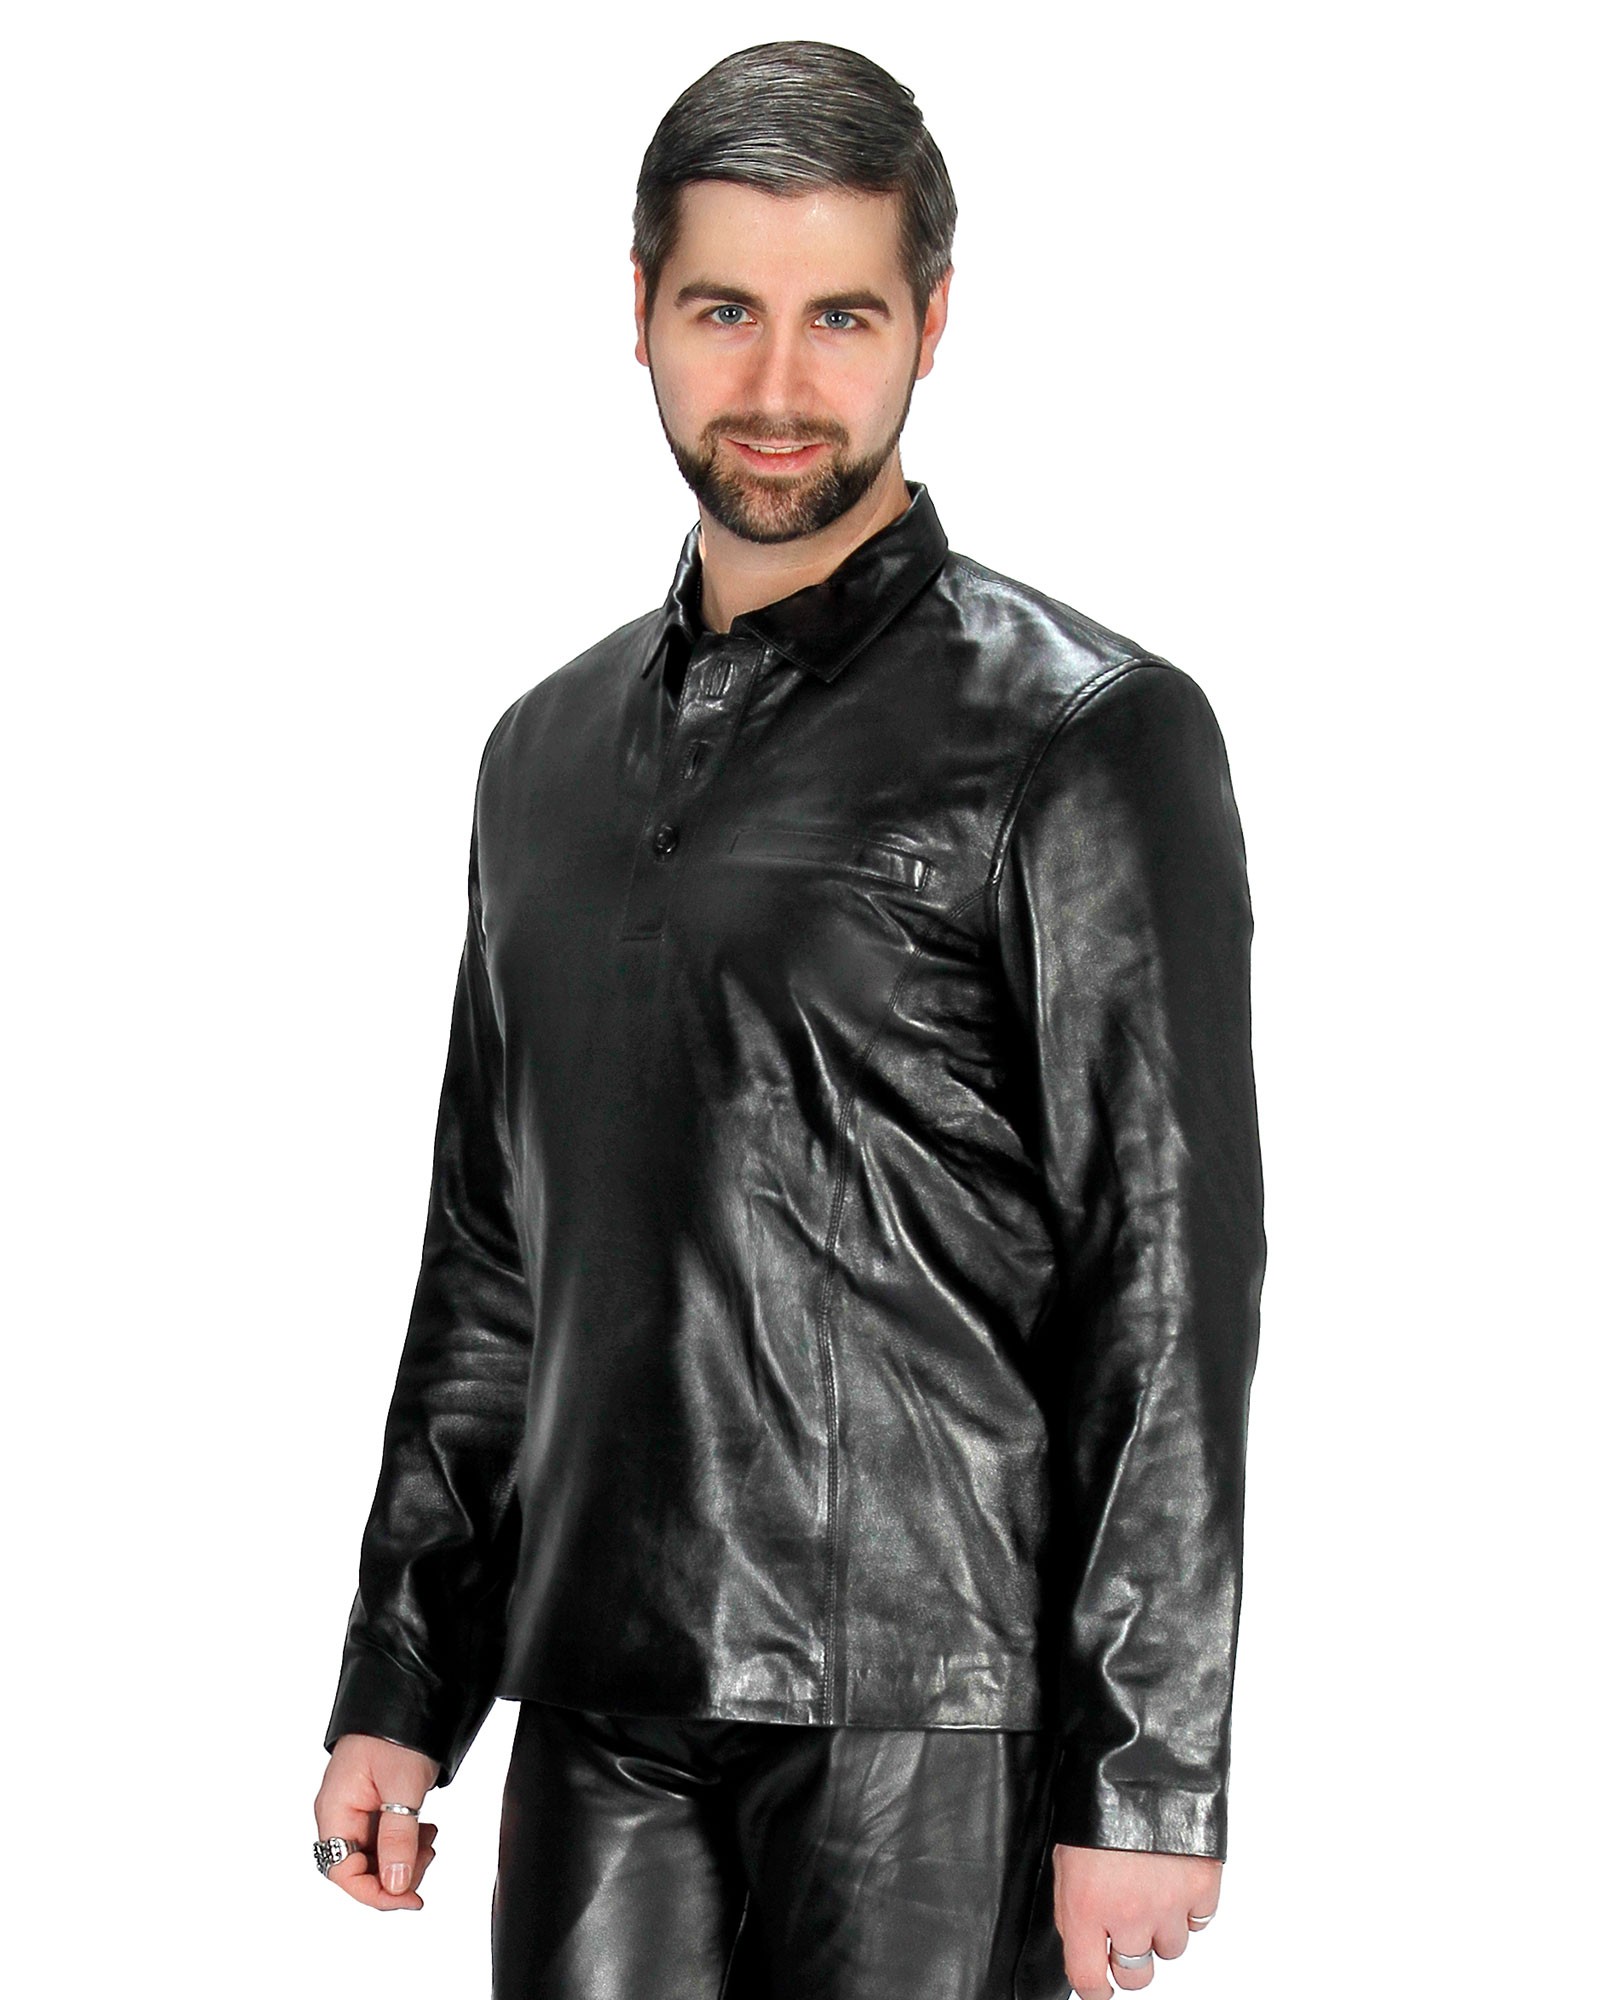 Größe (Select) Größe long shirt arm Leather wählen S leather men\'s Genuine Bitte shirt Oliver nappa polo black